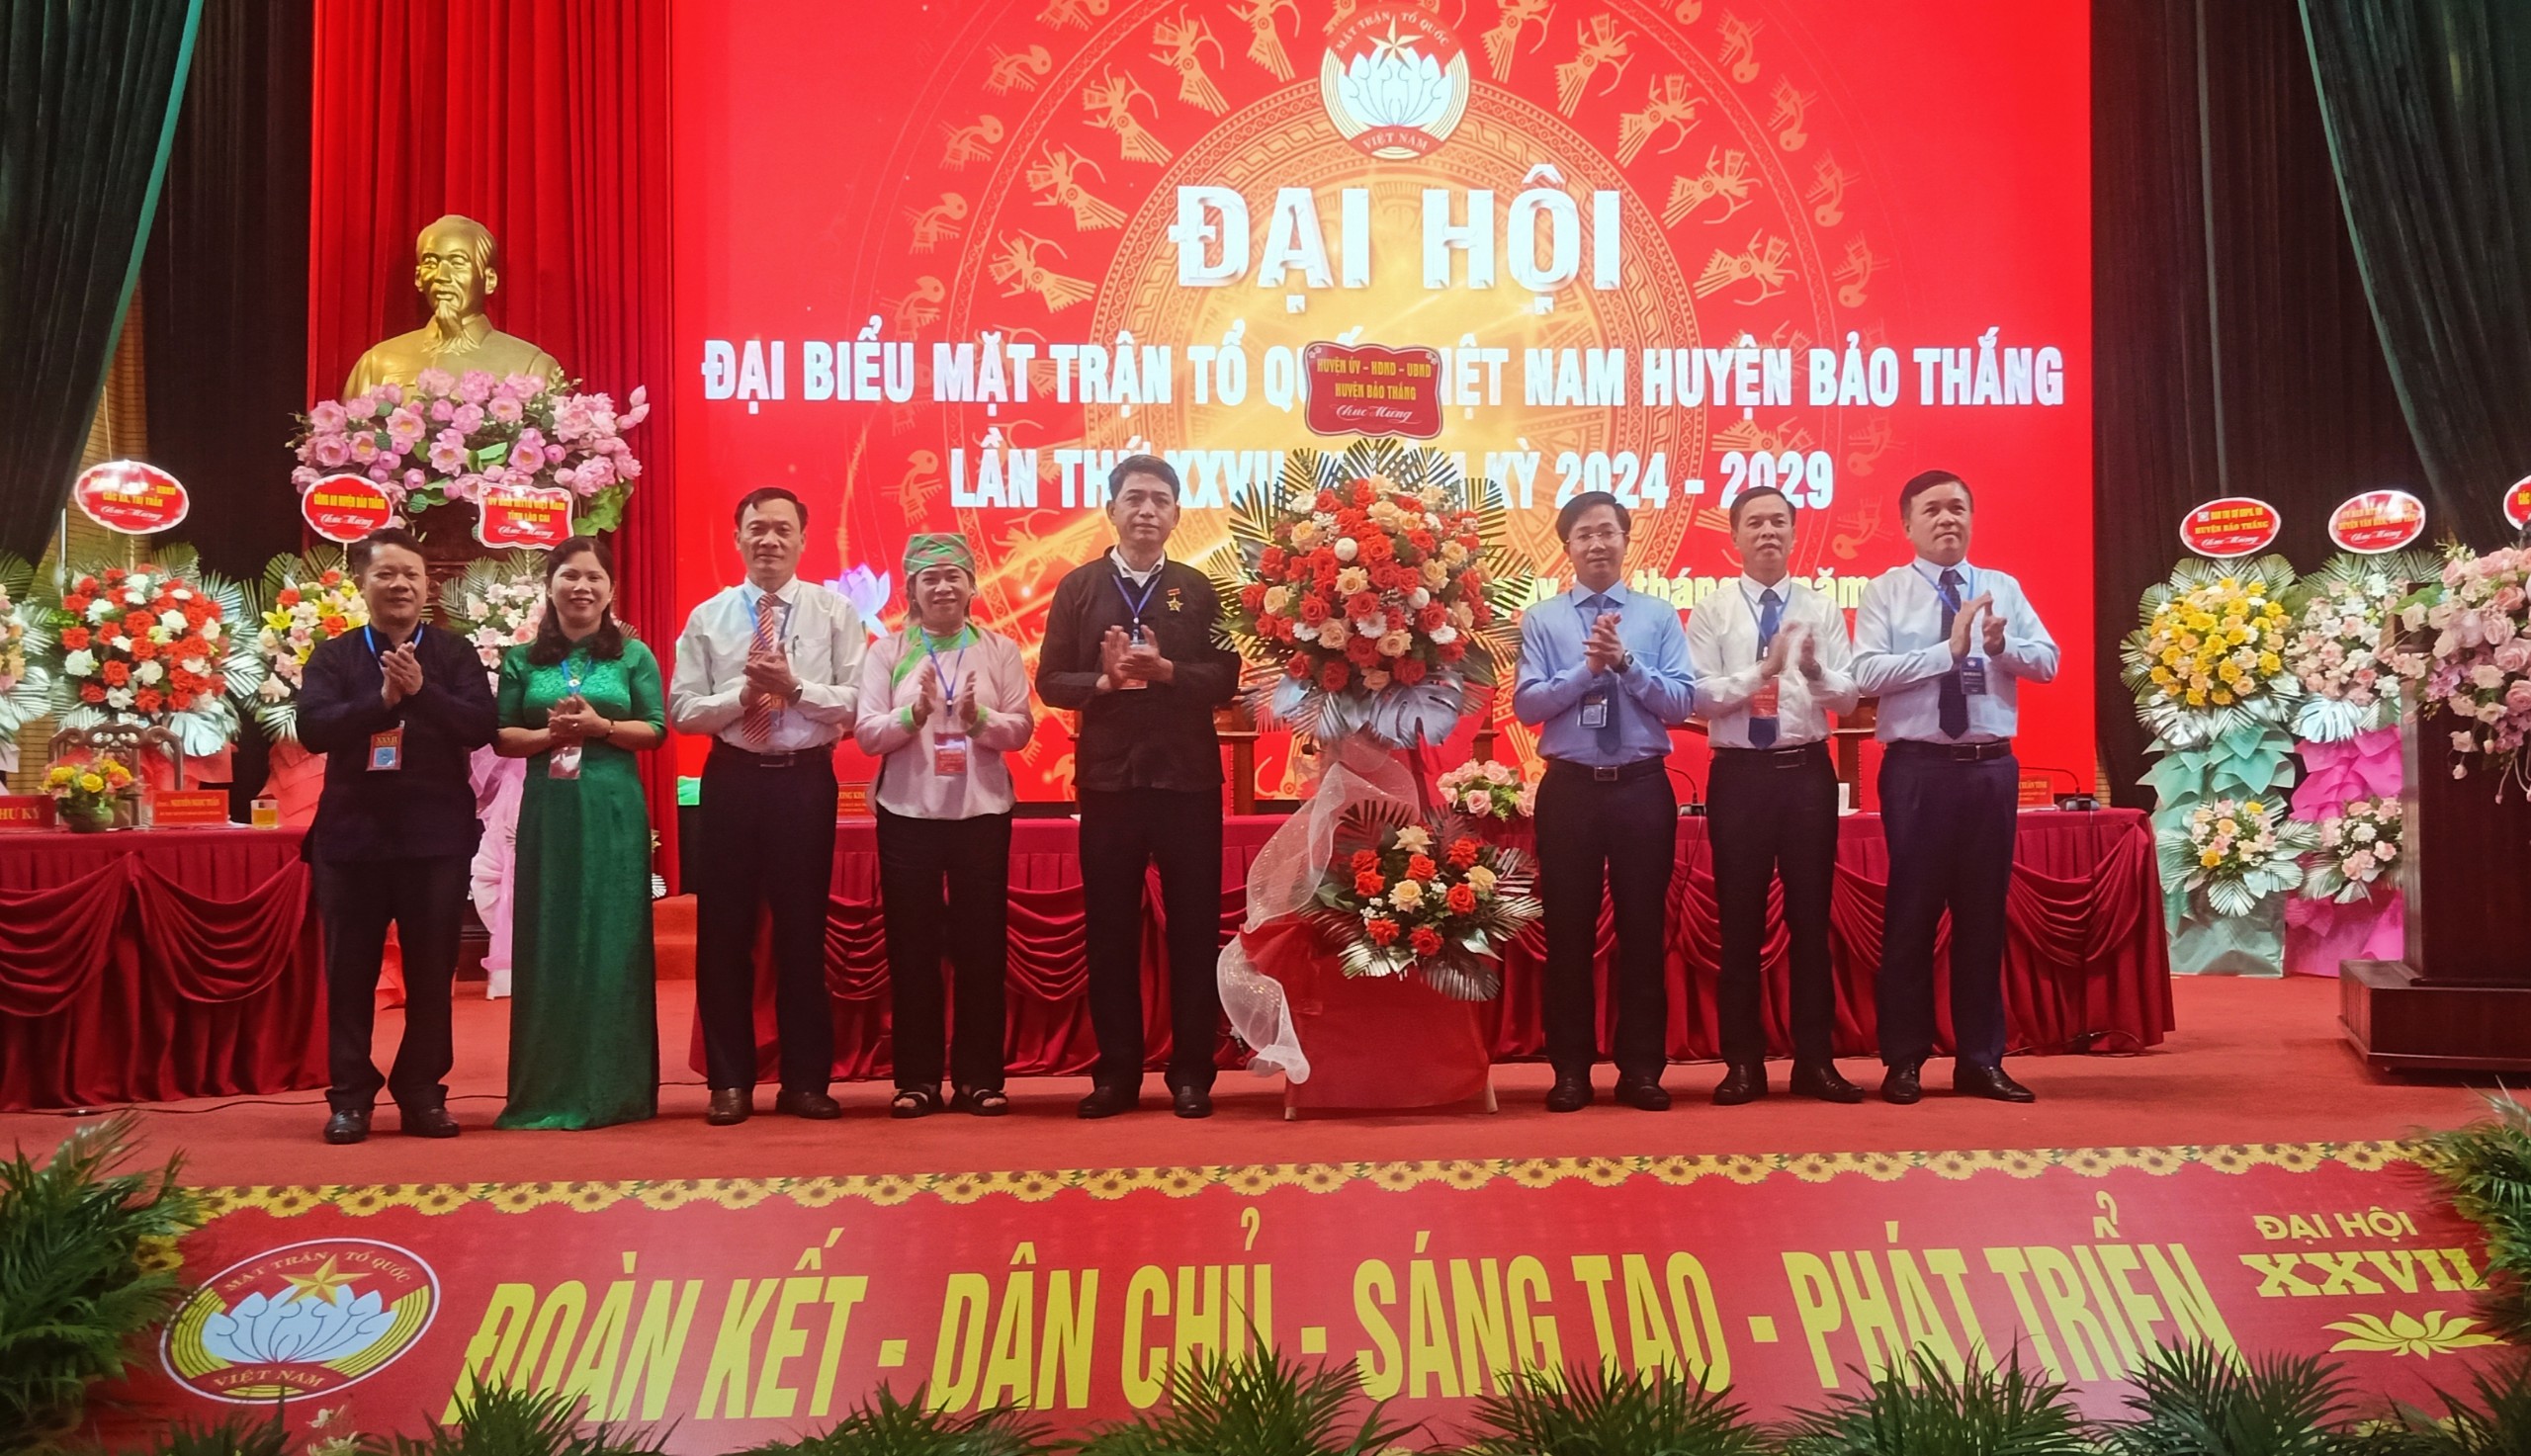 huyện uỷ- HĐND- UBND huyện Bảo Thắng tặng hoa chúc mừng Đại hội.jpg